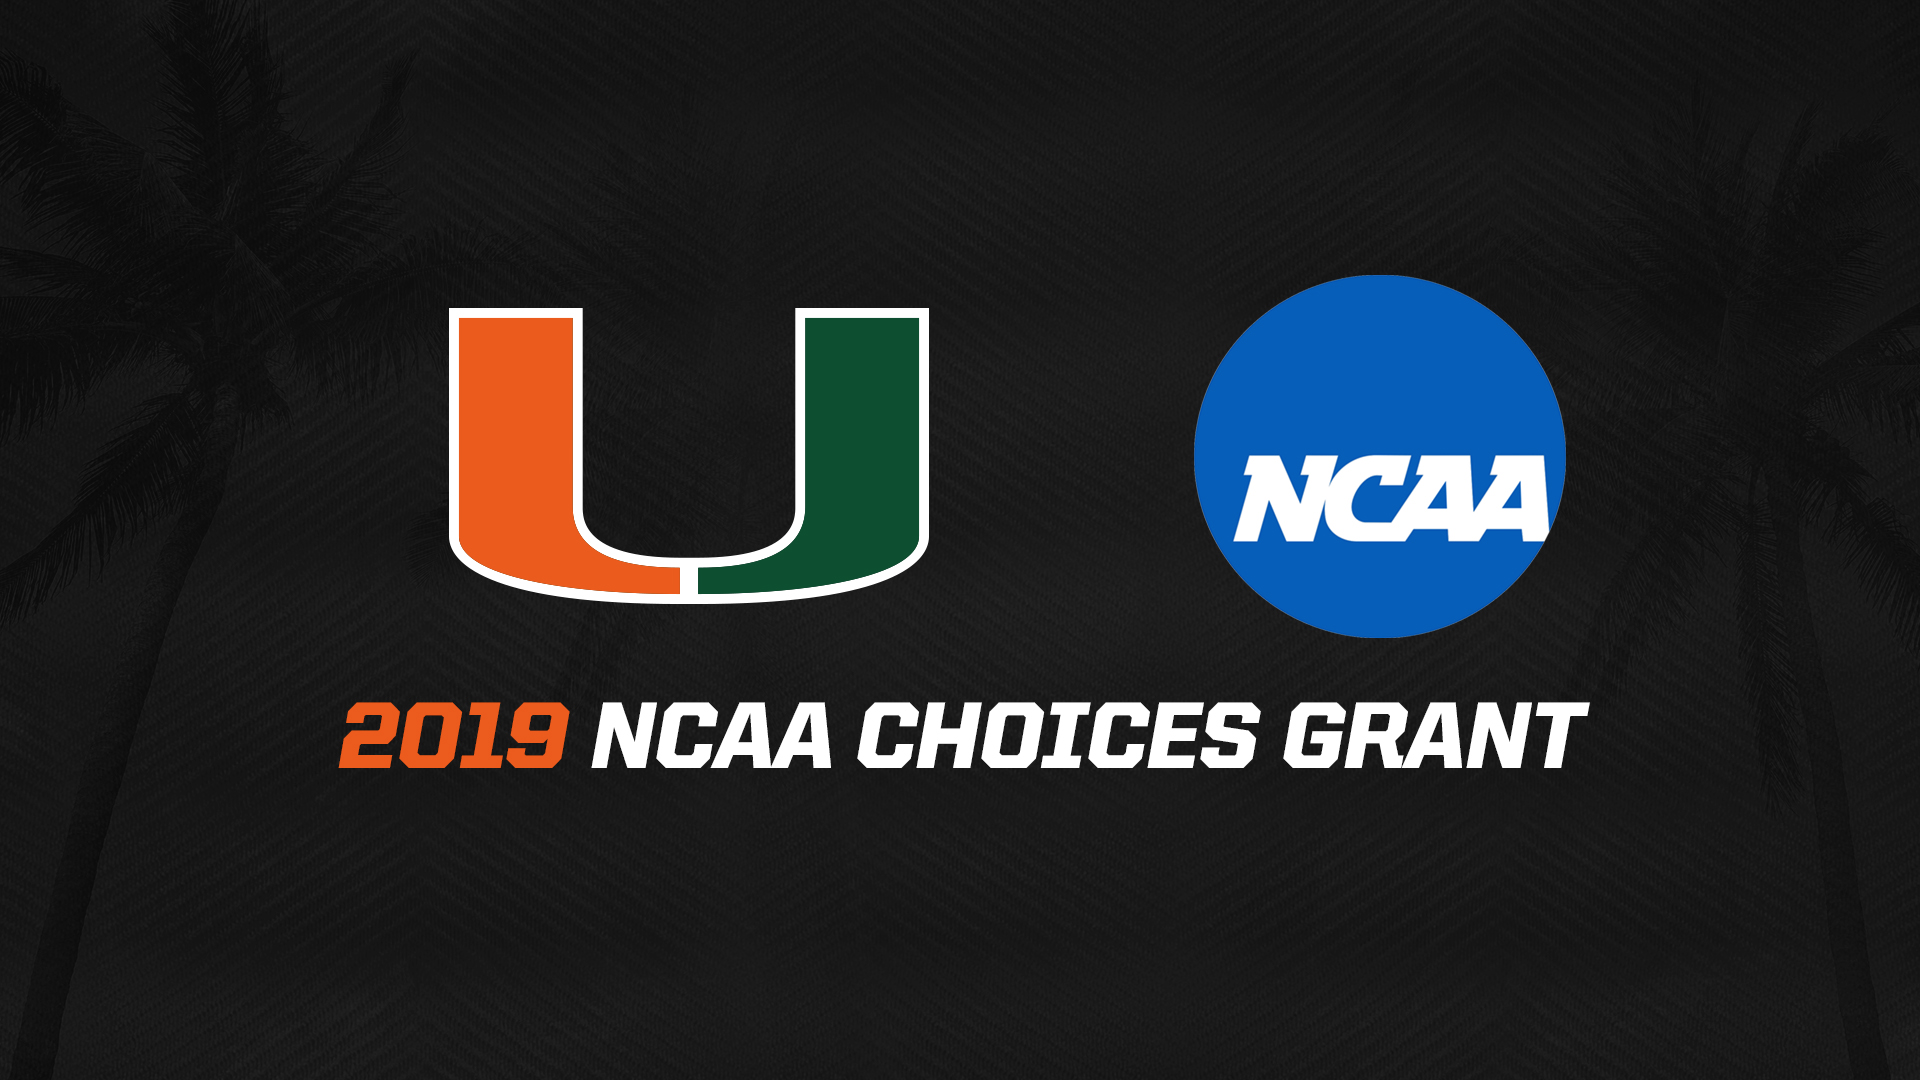 University of Miami Awarded 2019 NCAA CHOICES Grant